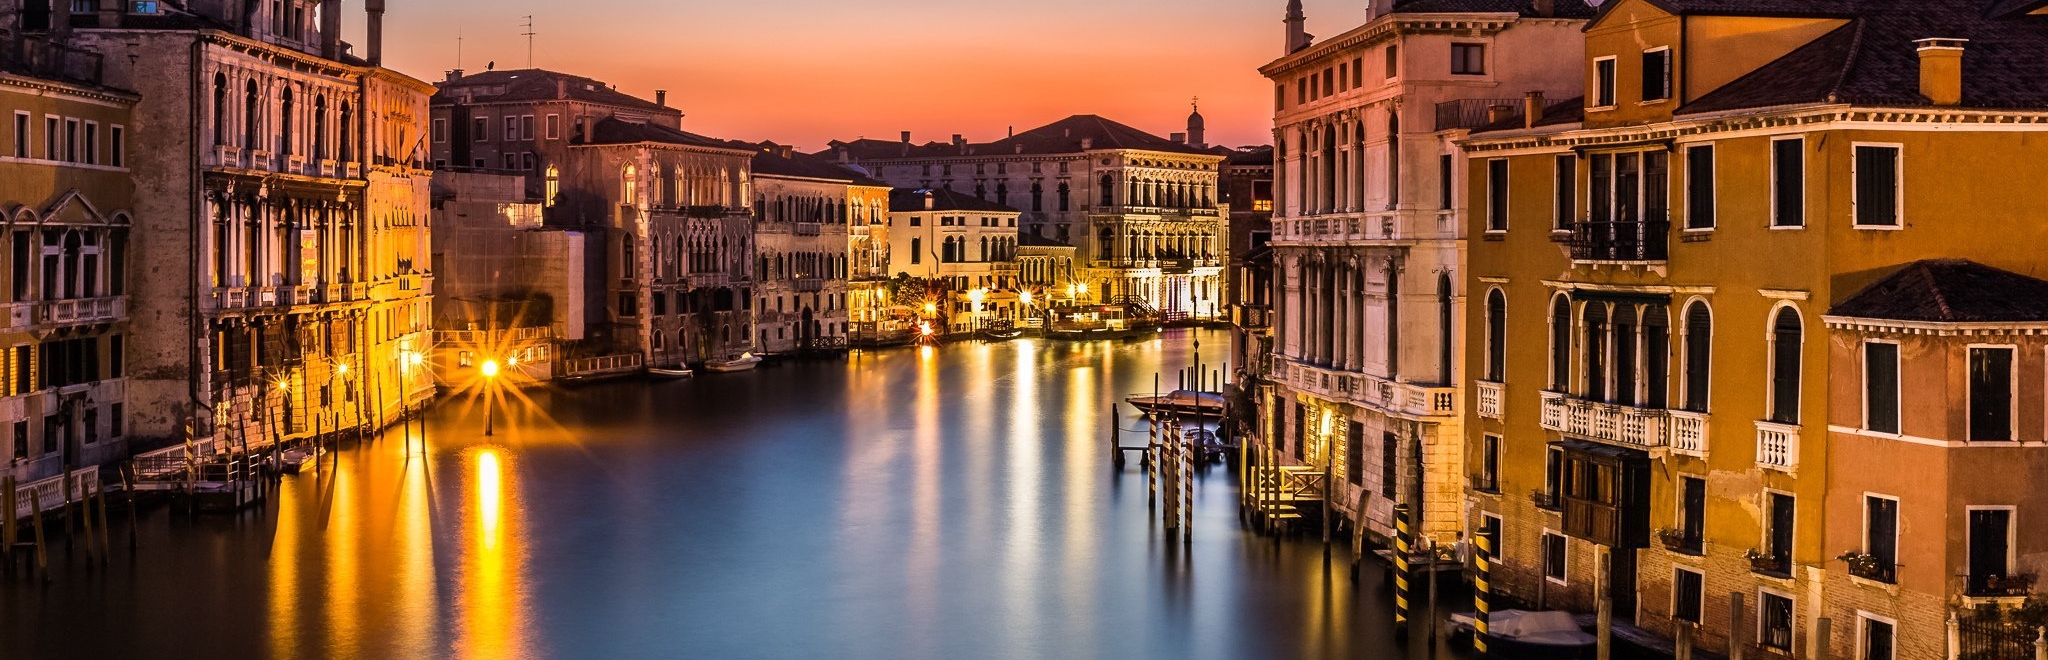 venezia-veneto-italia-canale-rialto-notte-luci-case-lago